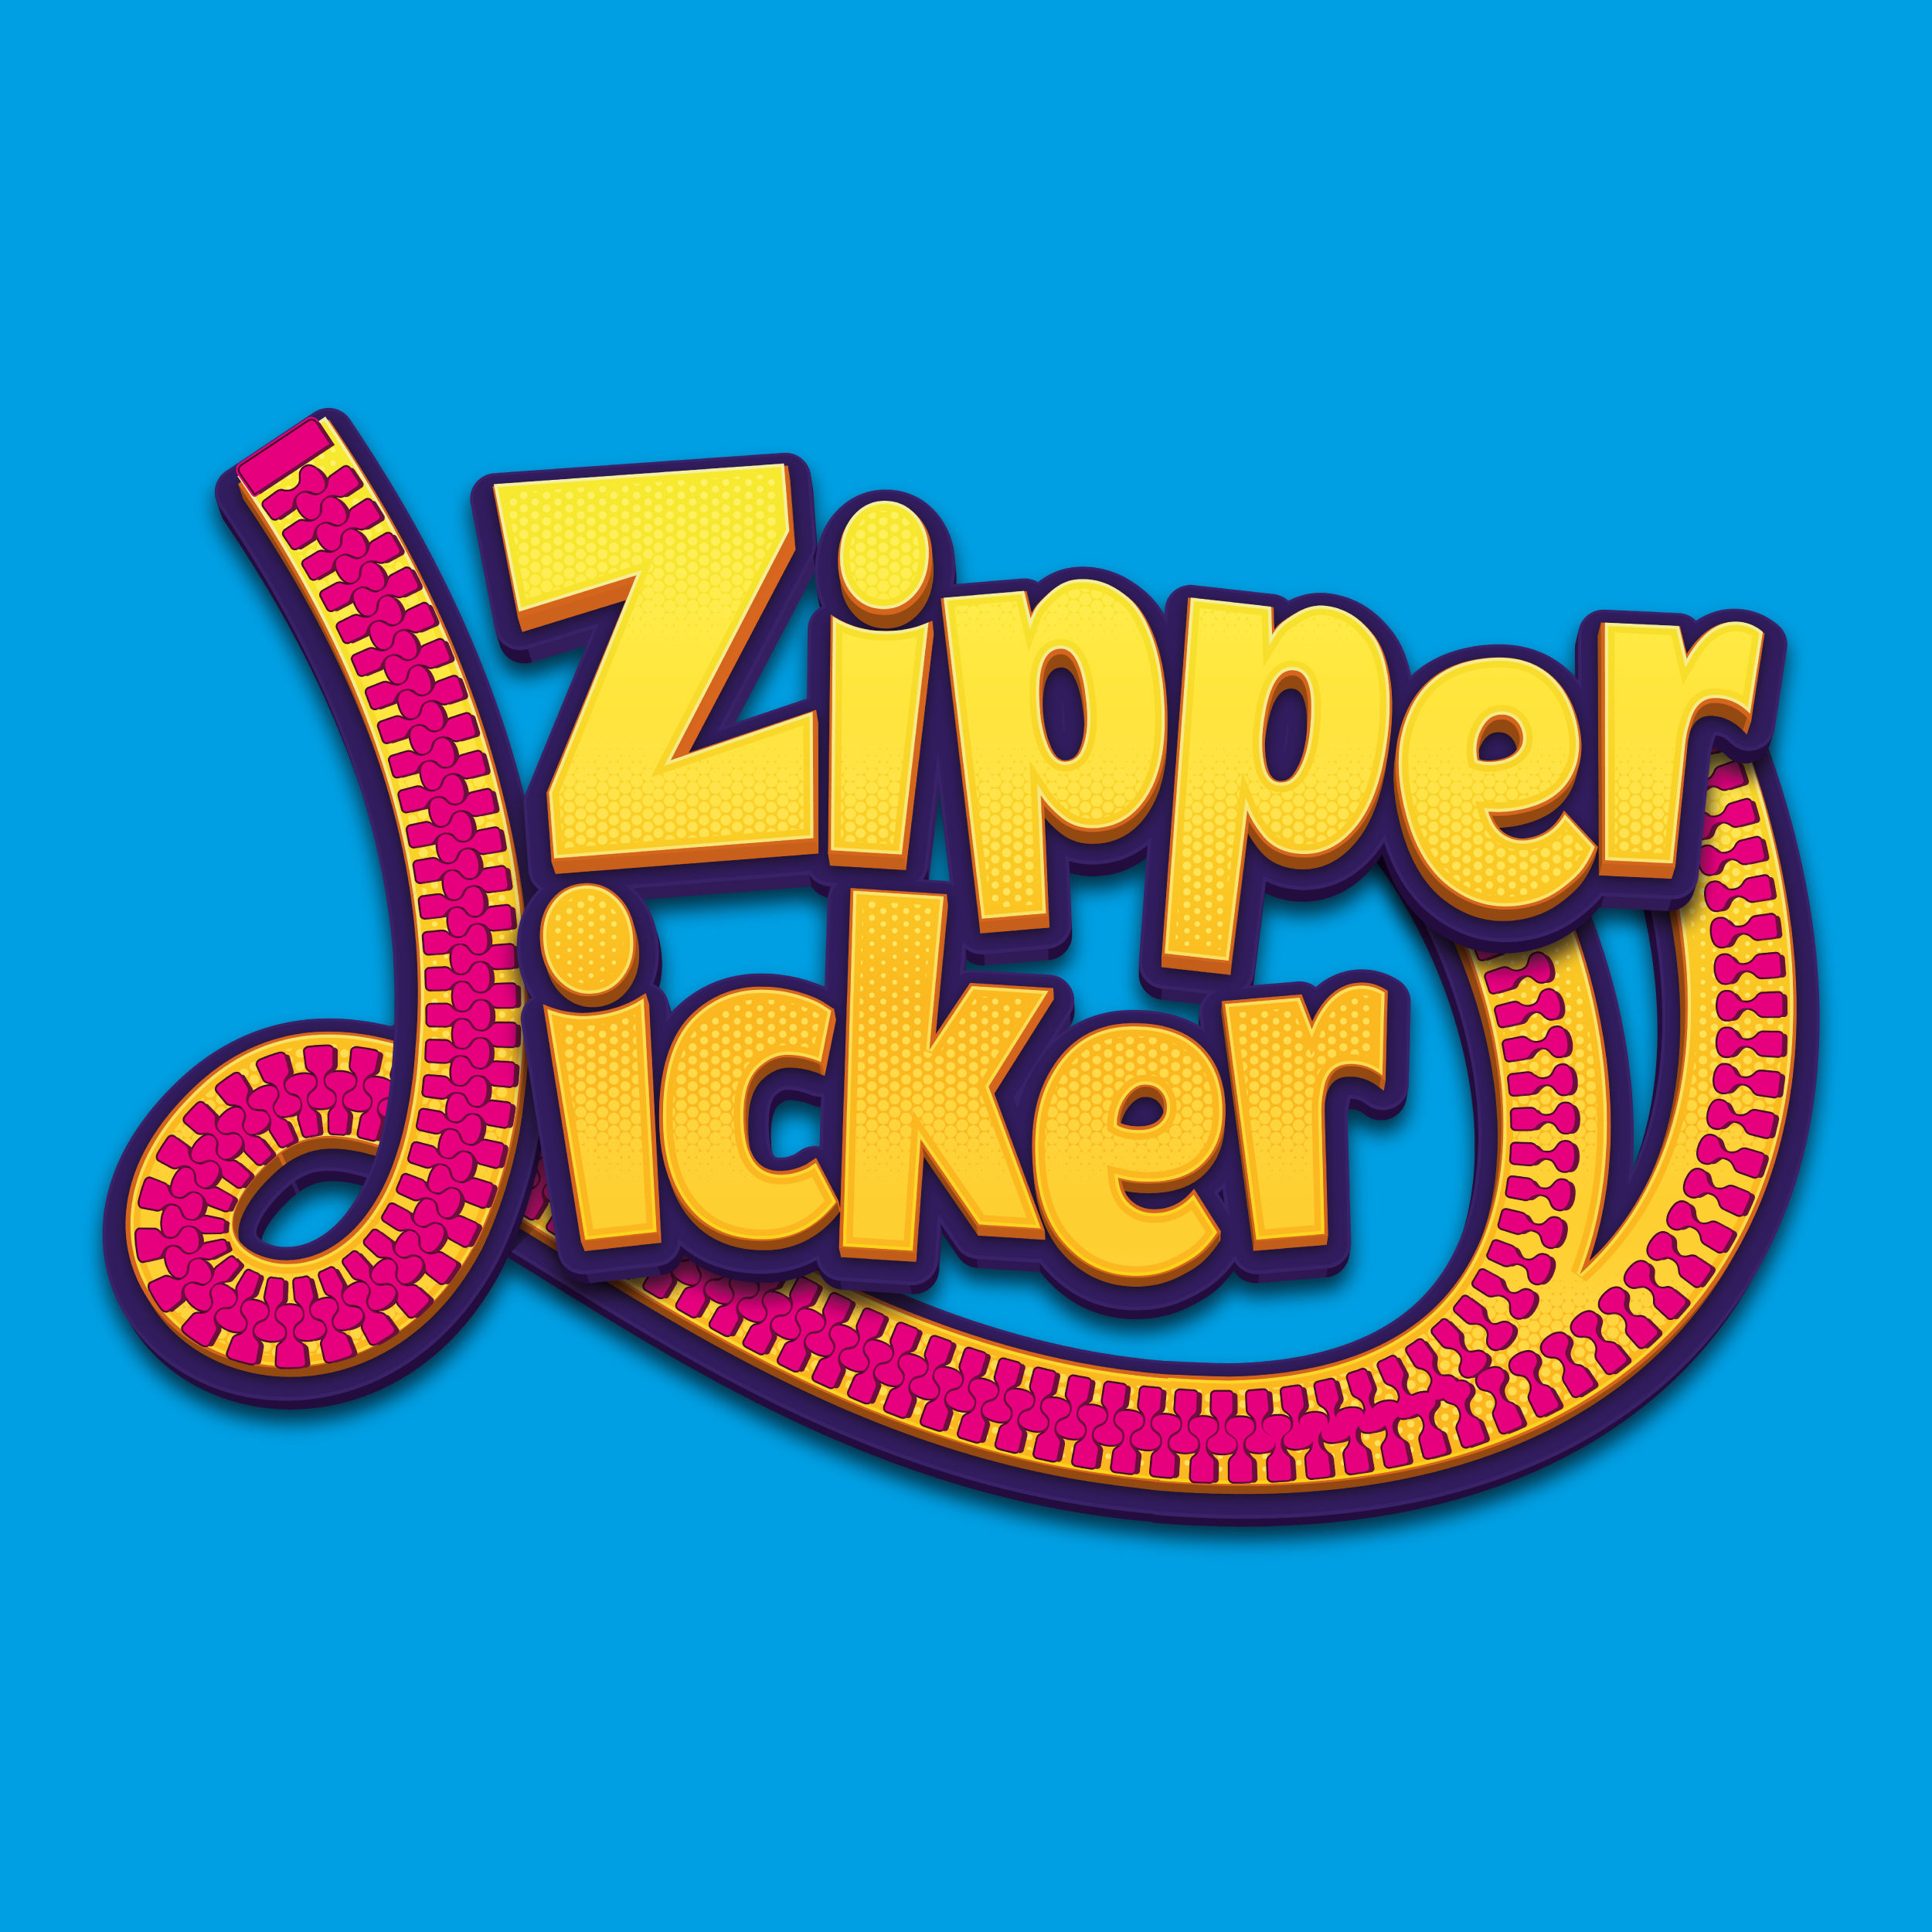 Kidz_World_Website_2022_Candies_Brands_Logos_Zipper_Licker_Front